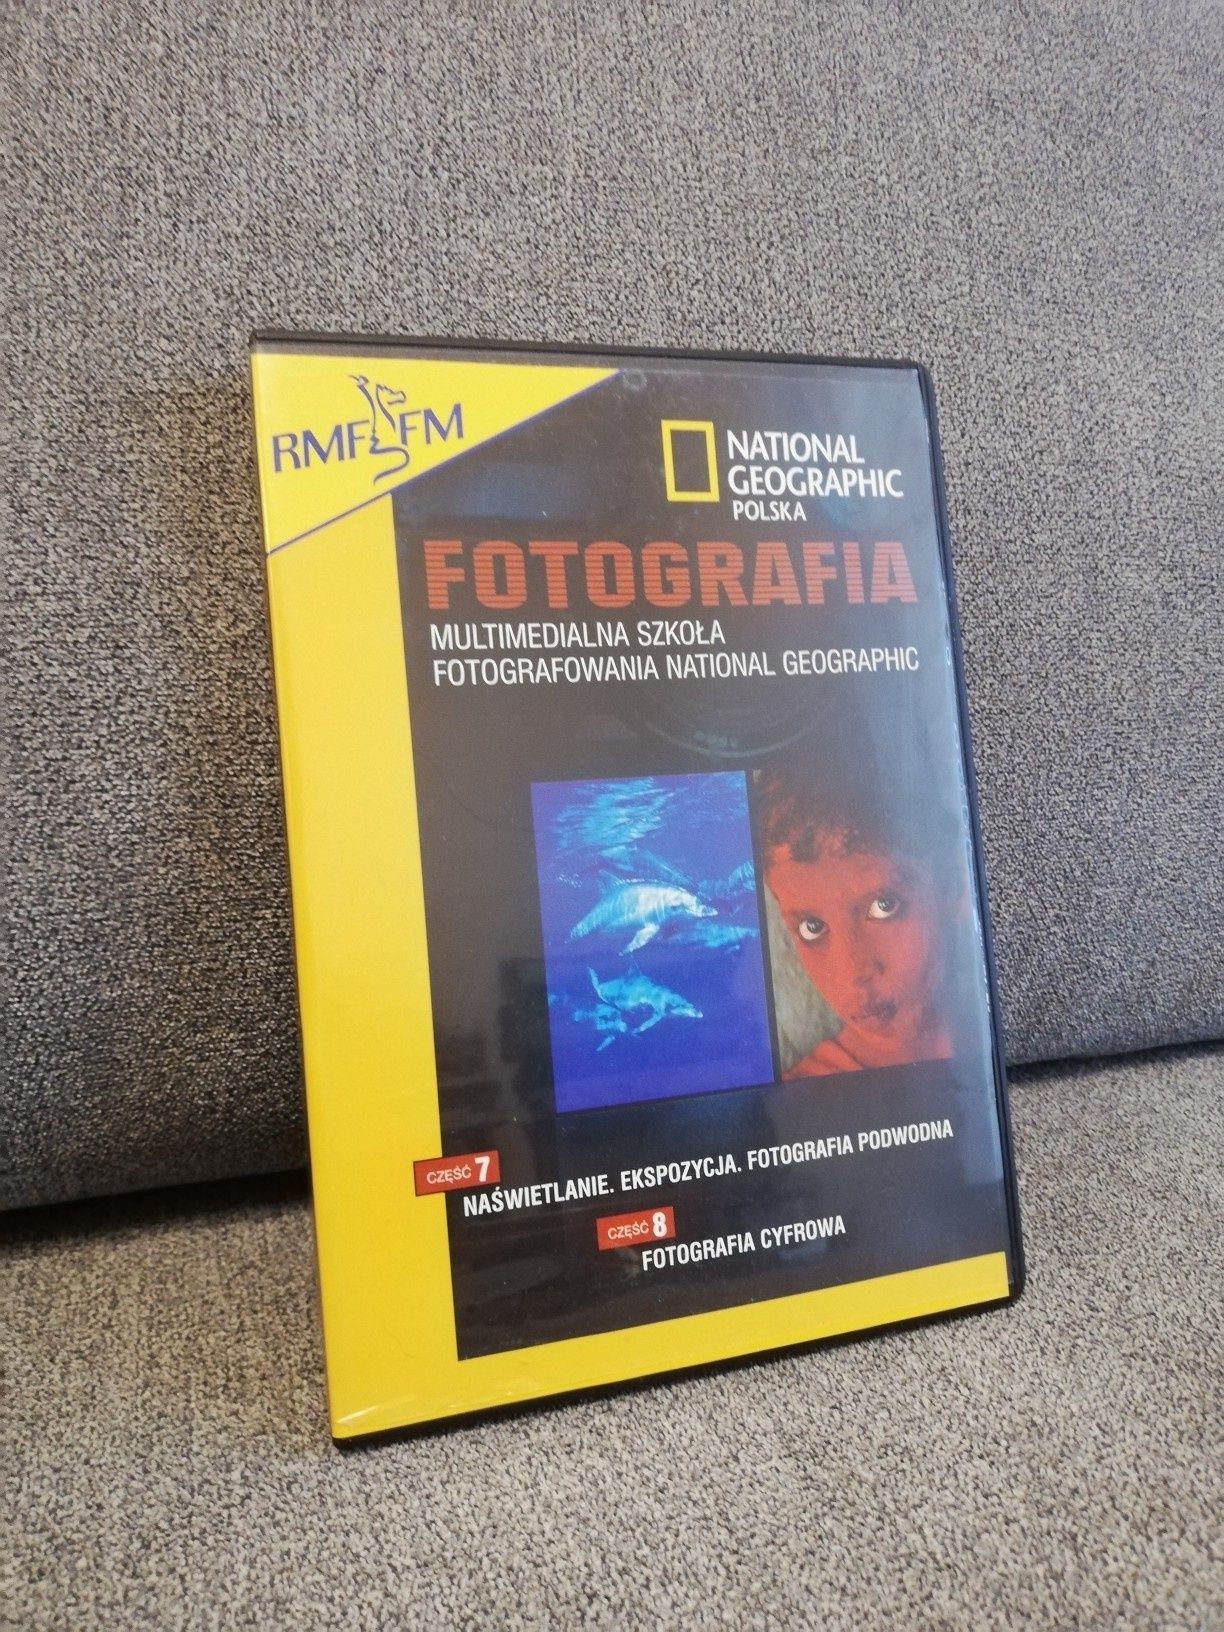 Fotografia National Geographic cz 7 i cz 8 CD